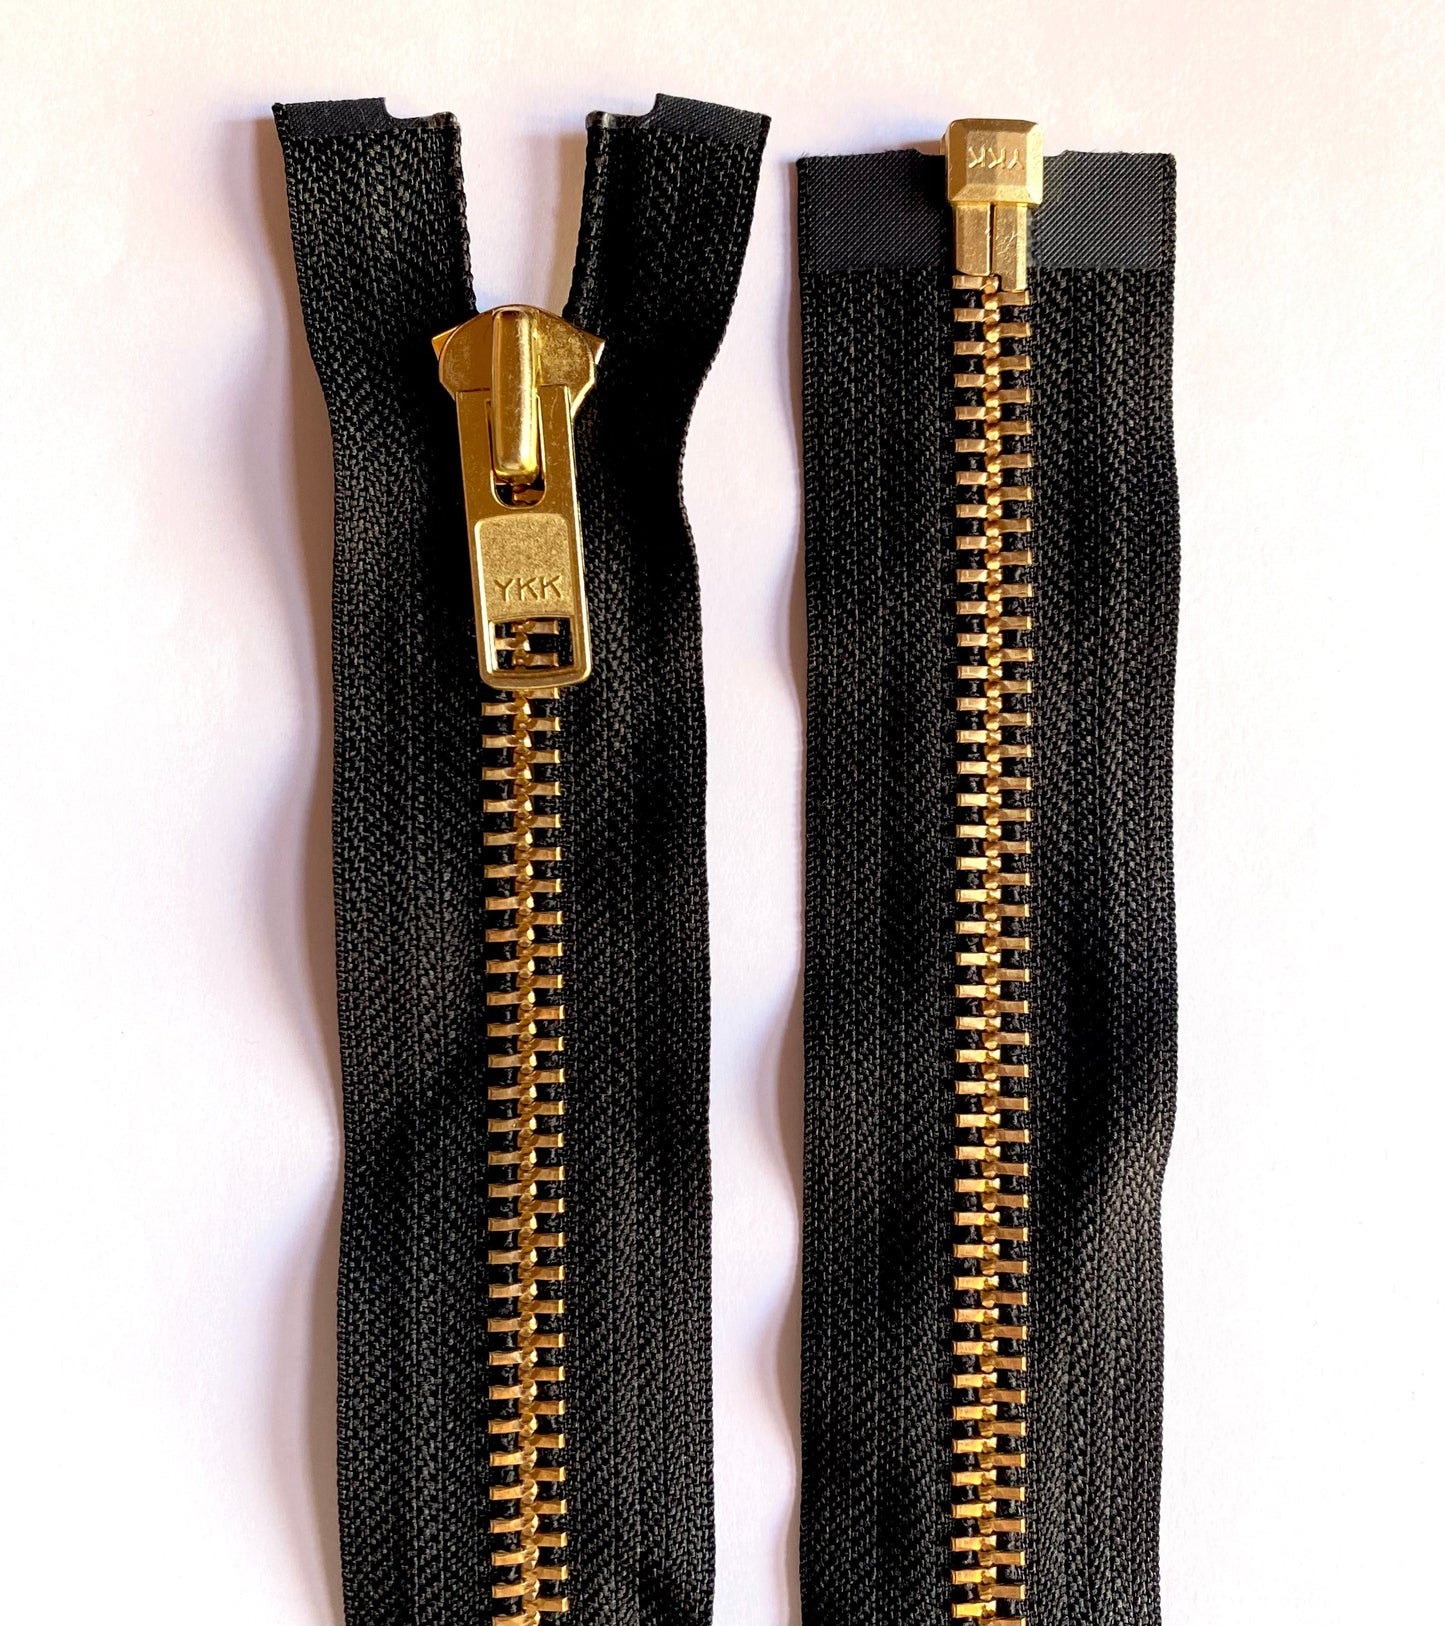 YKK metal zipper divisible 53 cm